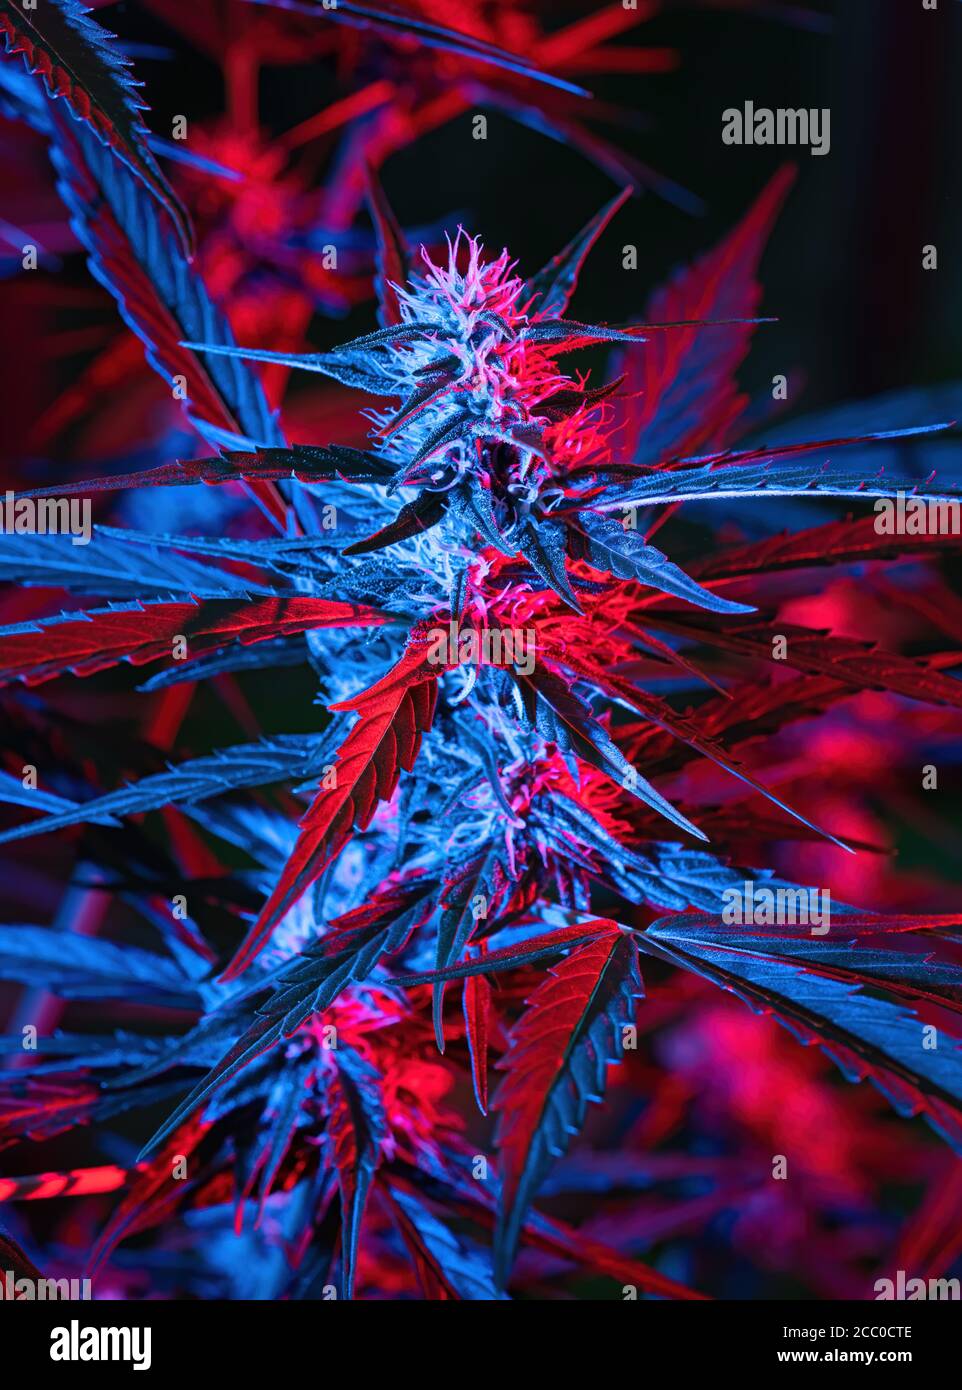 Reife Cannabispflanze - Northern Light. Hanf beleuchtet durch psychedelisches Farblicht für Halluzinationseffekt. Blühende weibliche Marihuana Knospe Colas Blume Stockfoto